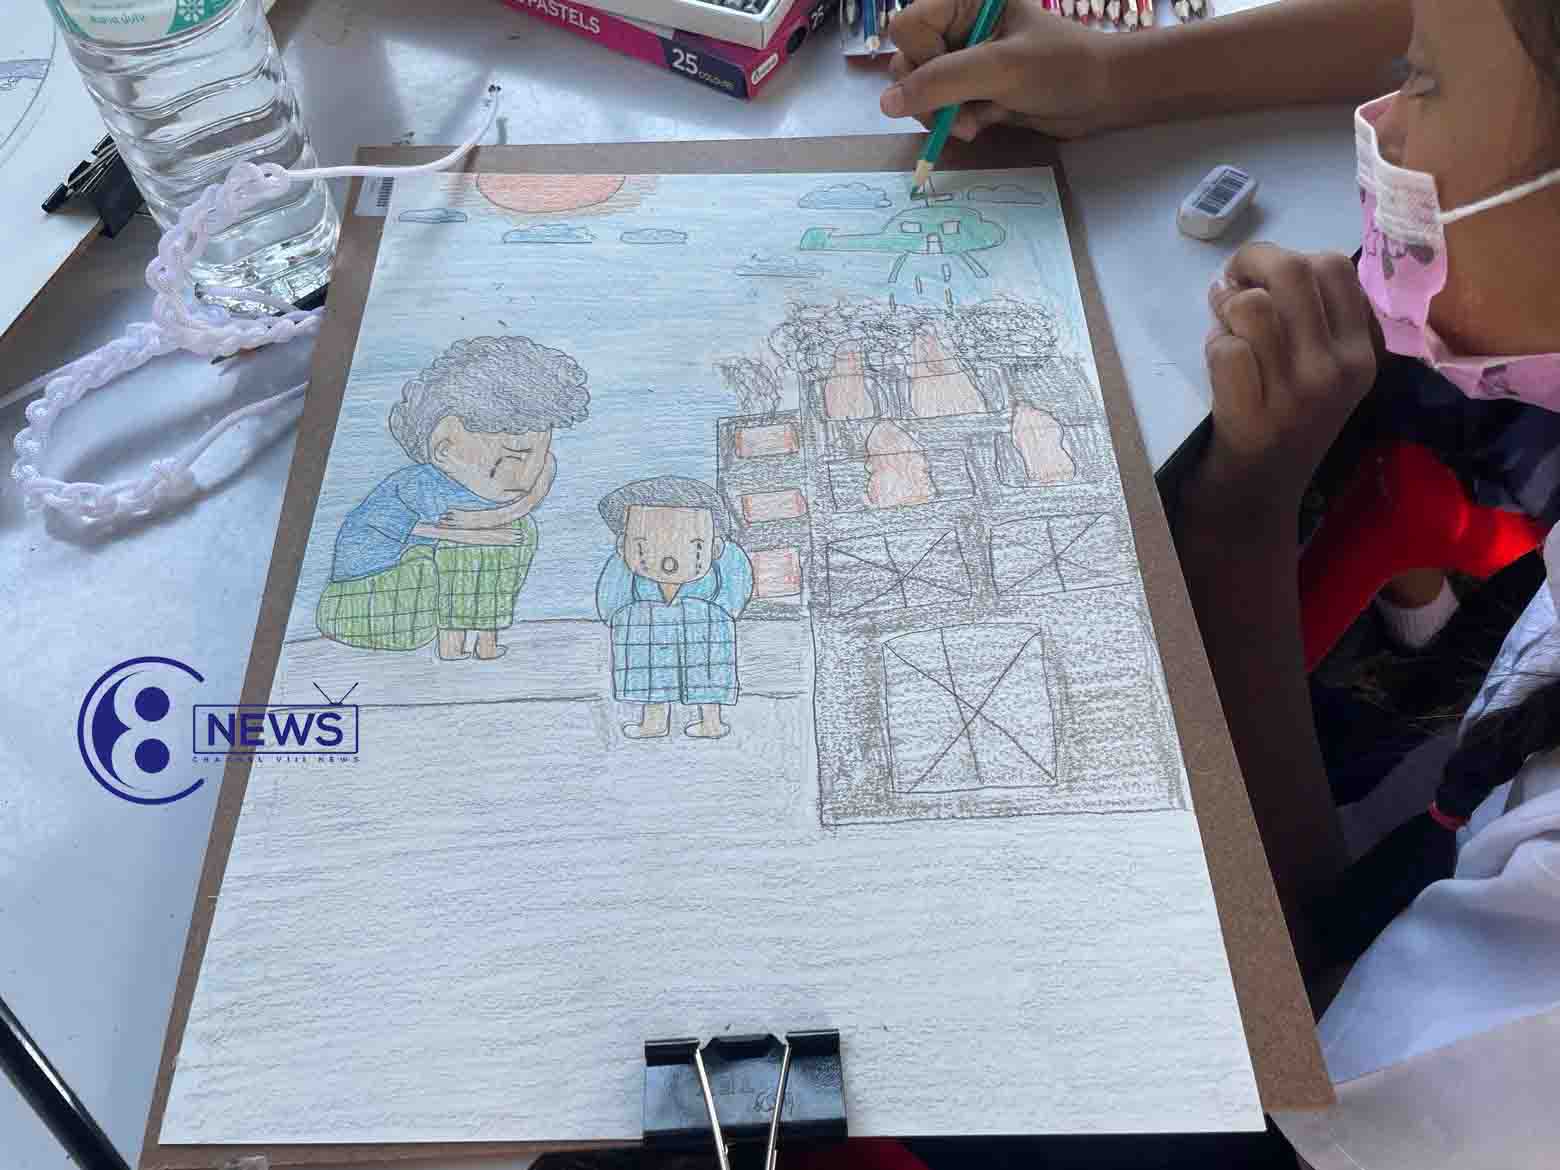 နိုင်ငံအတွင်း ဖြစ်ပေါ်နေတဲ့ စစ်ဘေးဒုက္ခတွေကို ပန်းချီဆွဲ ပုံဖော်နေတဲ့ ကလေးငယ်တွေ